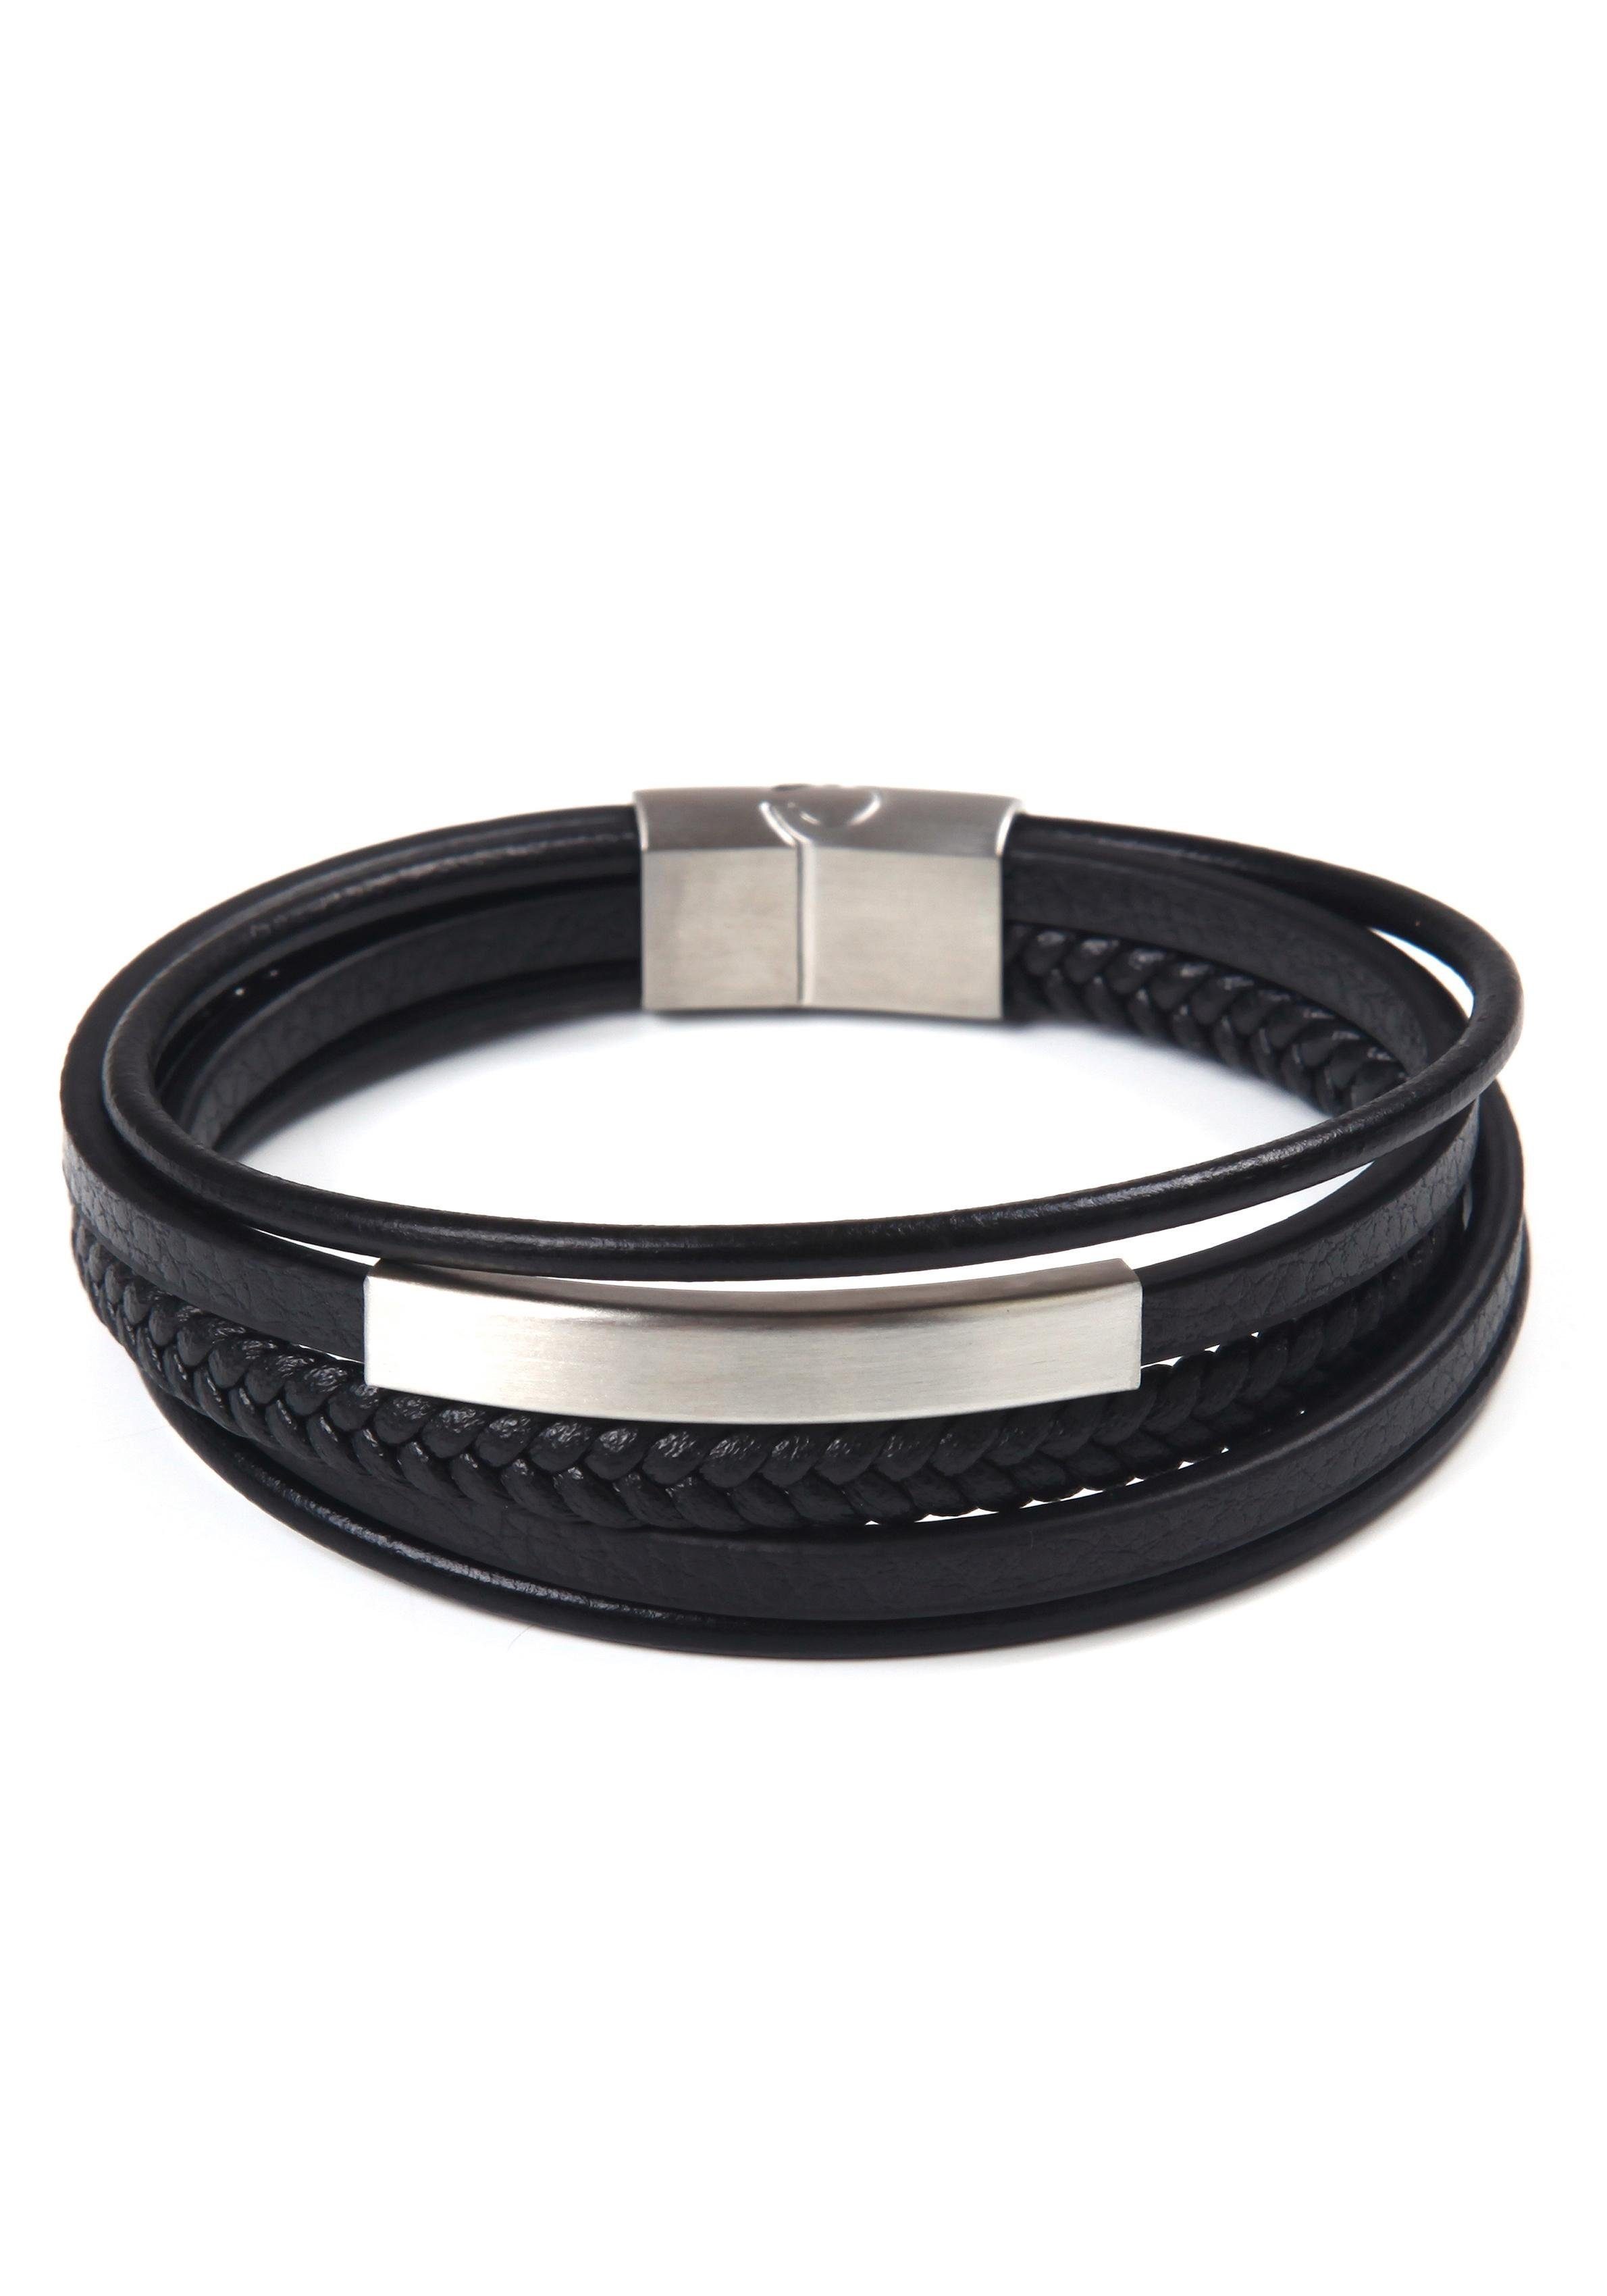 Firetti Armband stylisches Design im edelstahlfarben-schwarz sportlich-eleganten Stil, mehrreihig